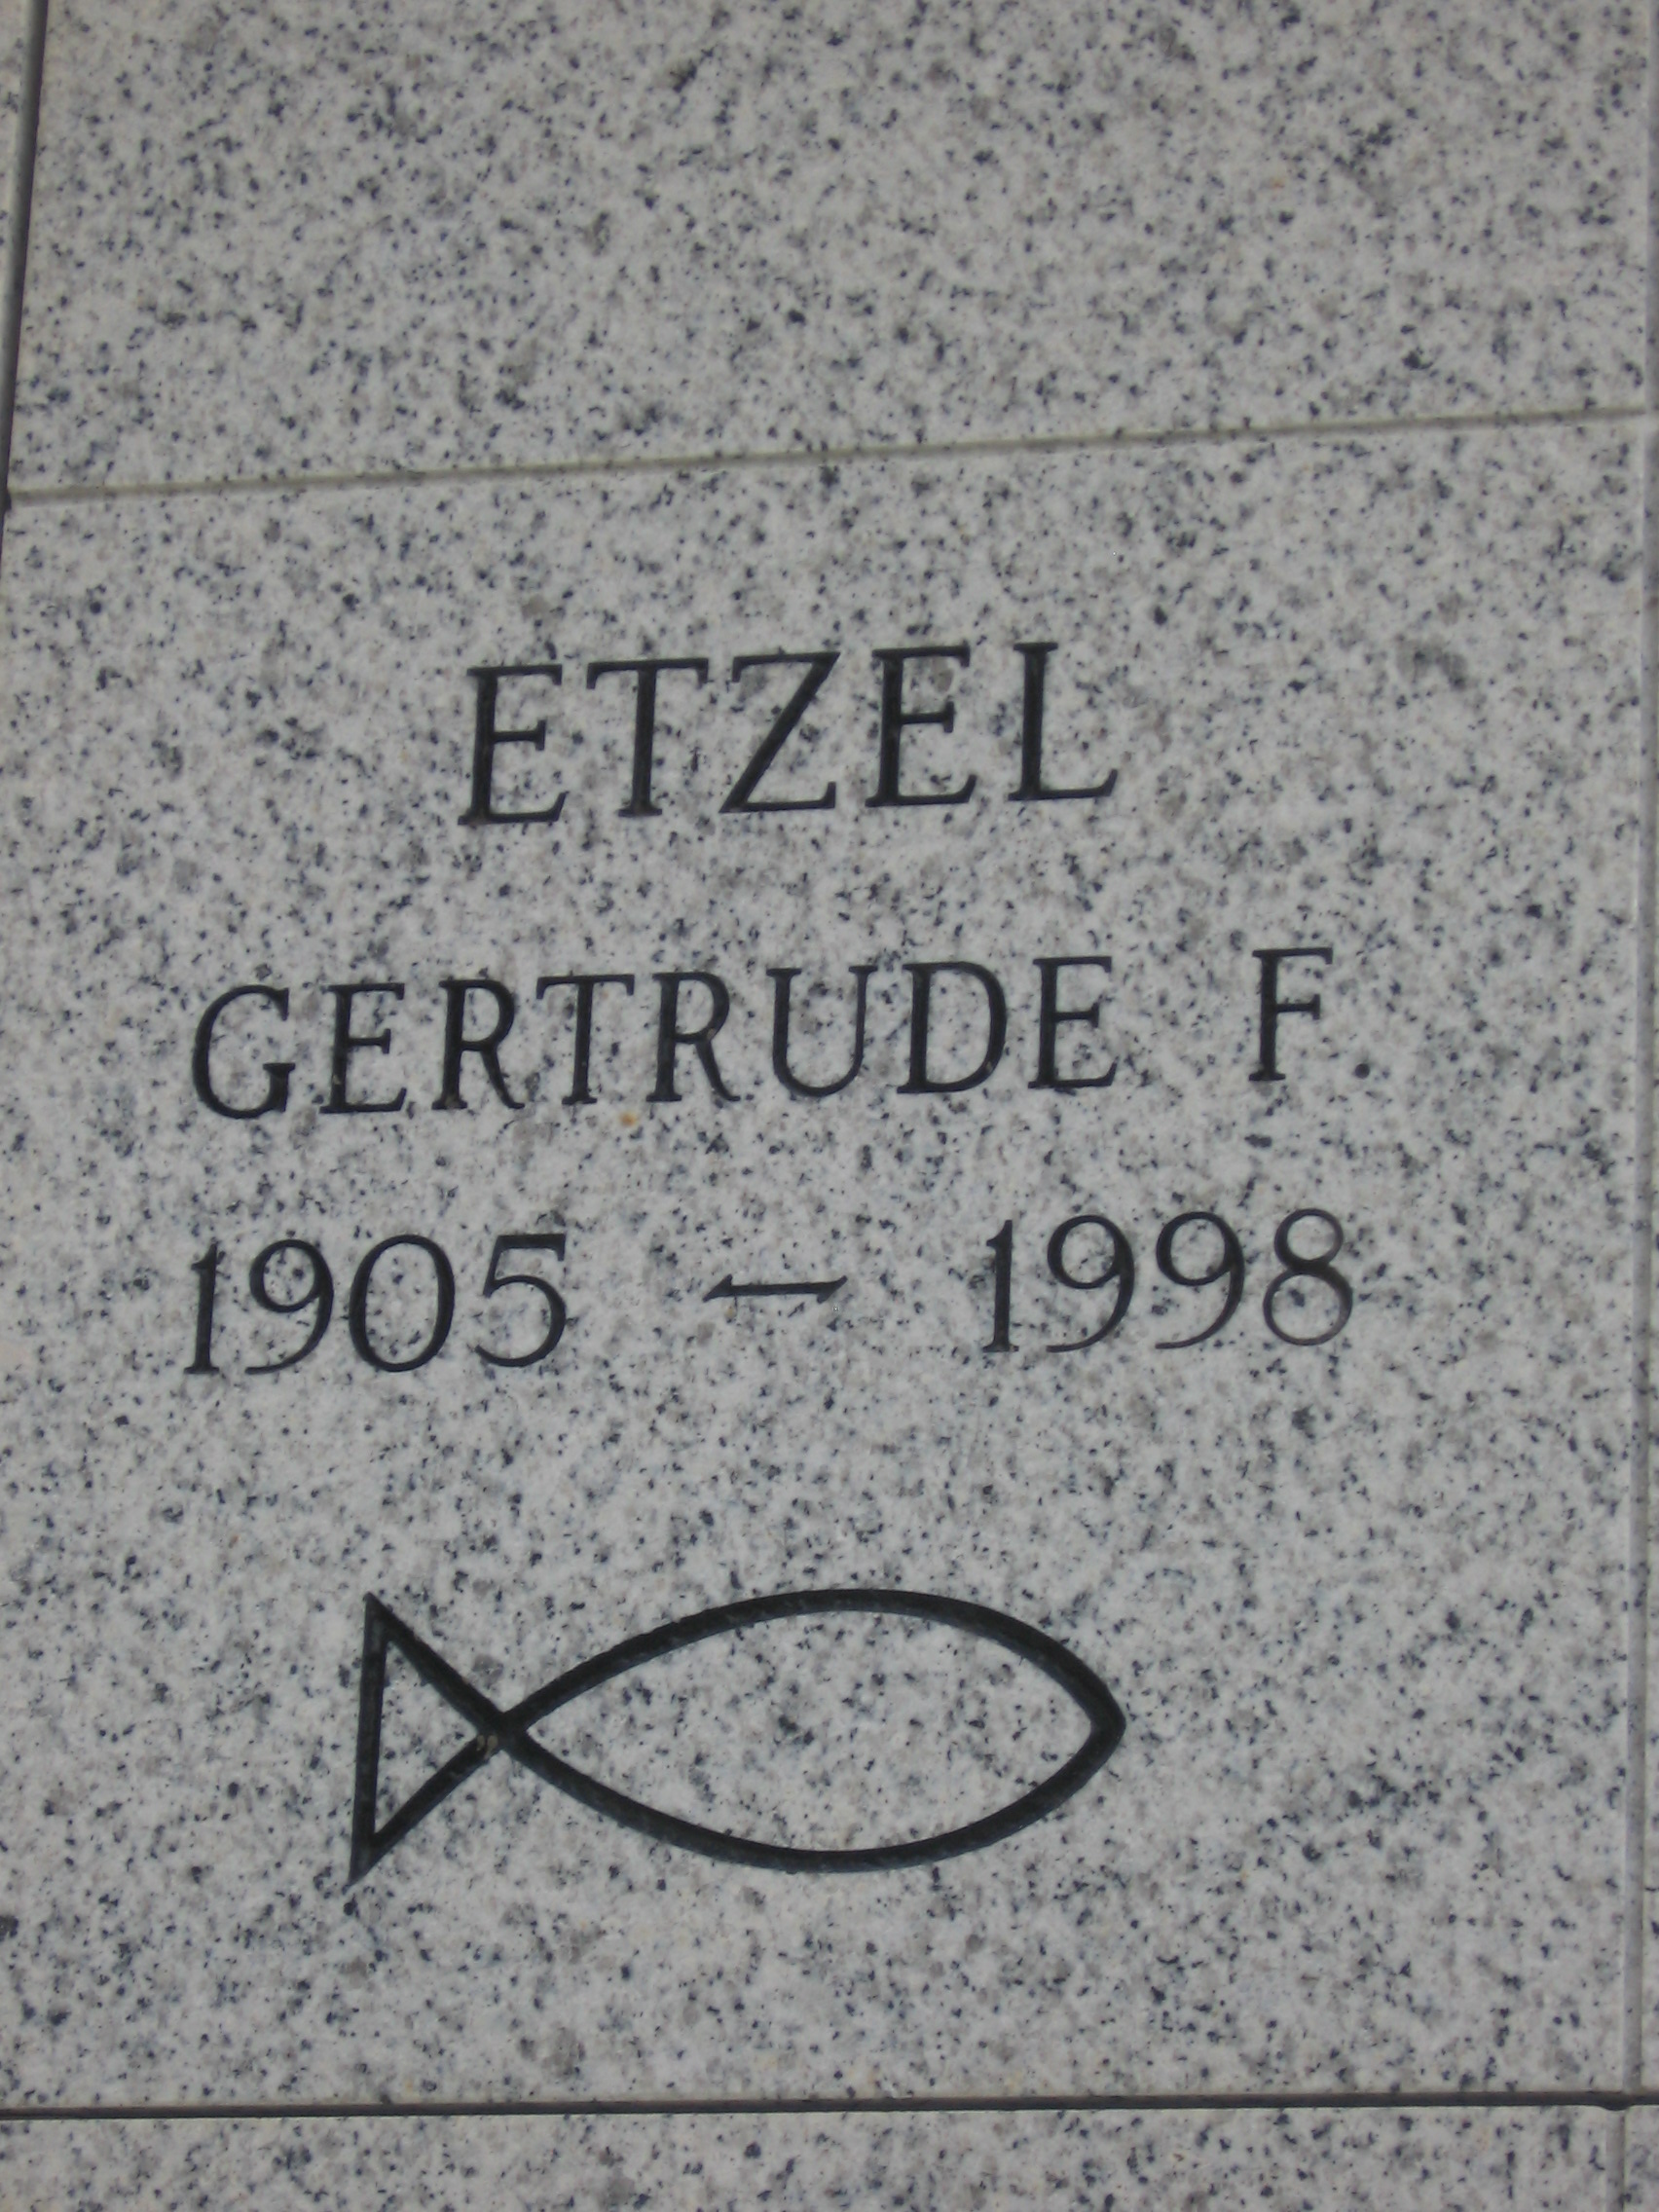 Gertrude F Etzel